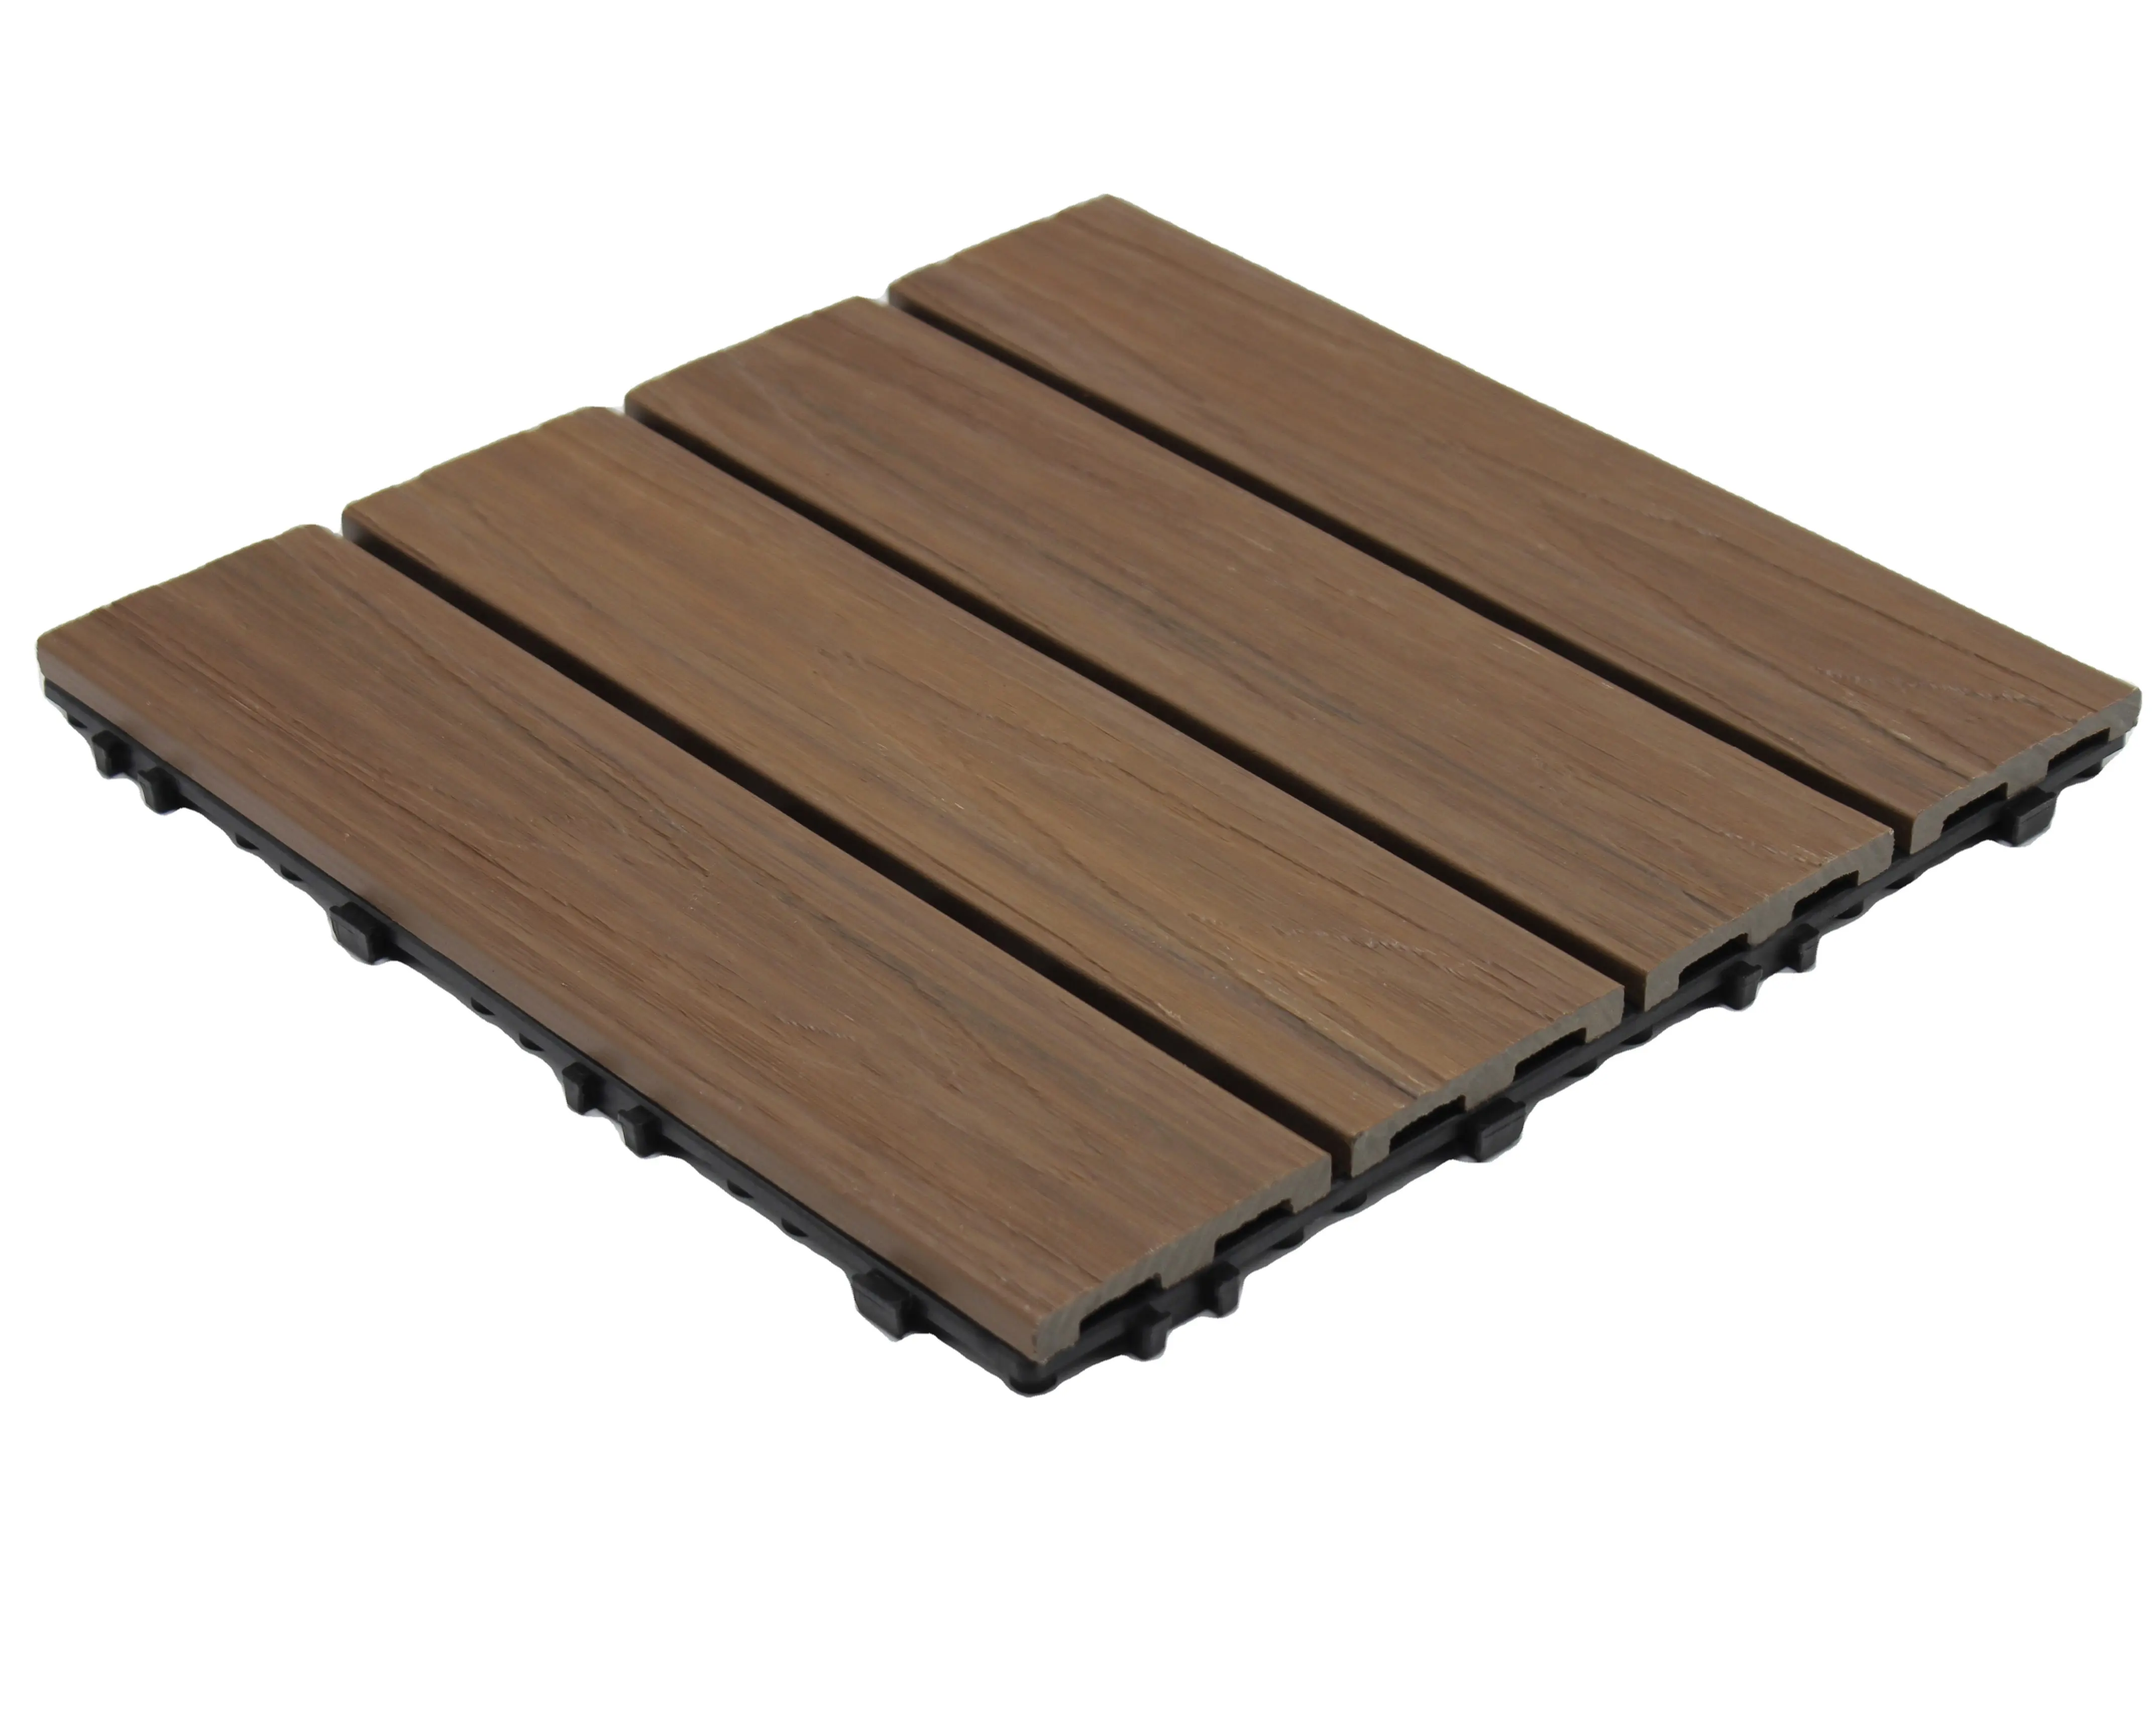 Co-extrusion terrasse étanche facile à installer bois plastique composite extérieur interlock carrelage de terrasse nouveau Design étanche WPC